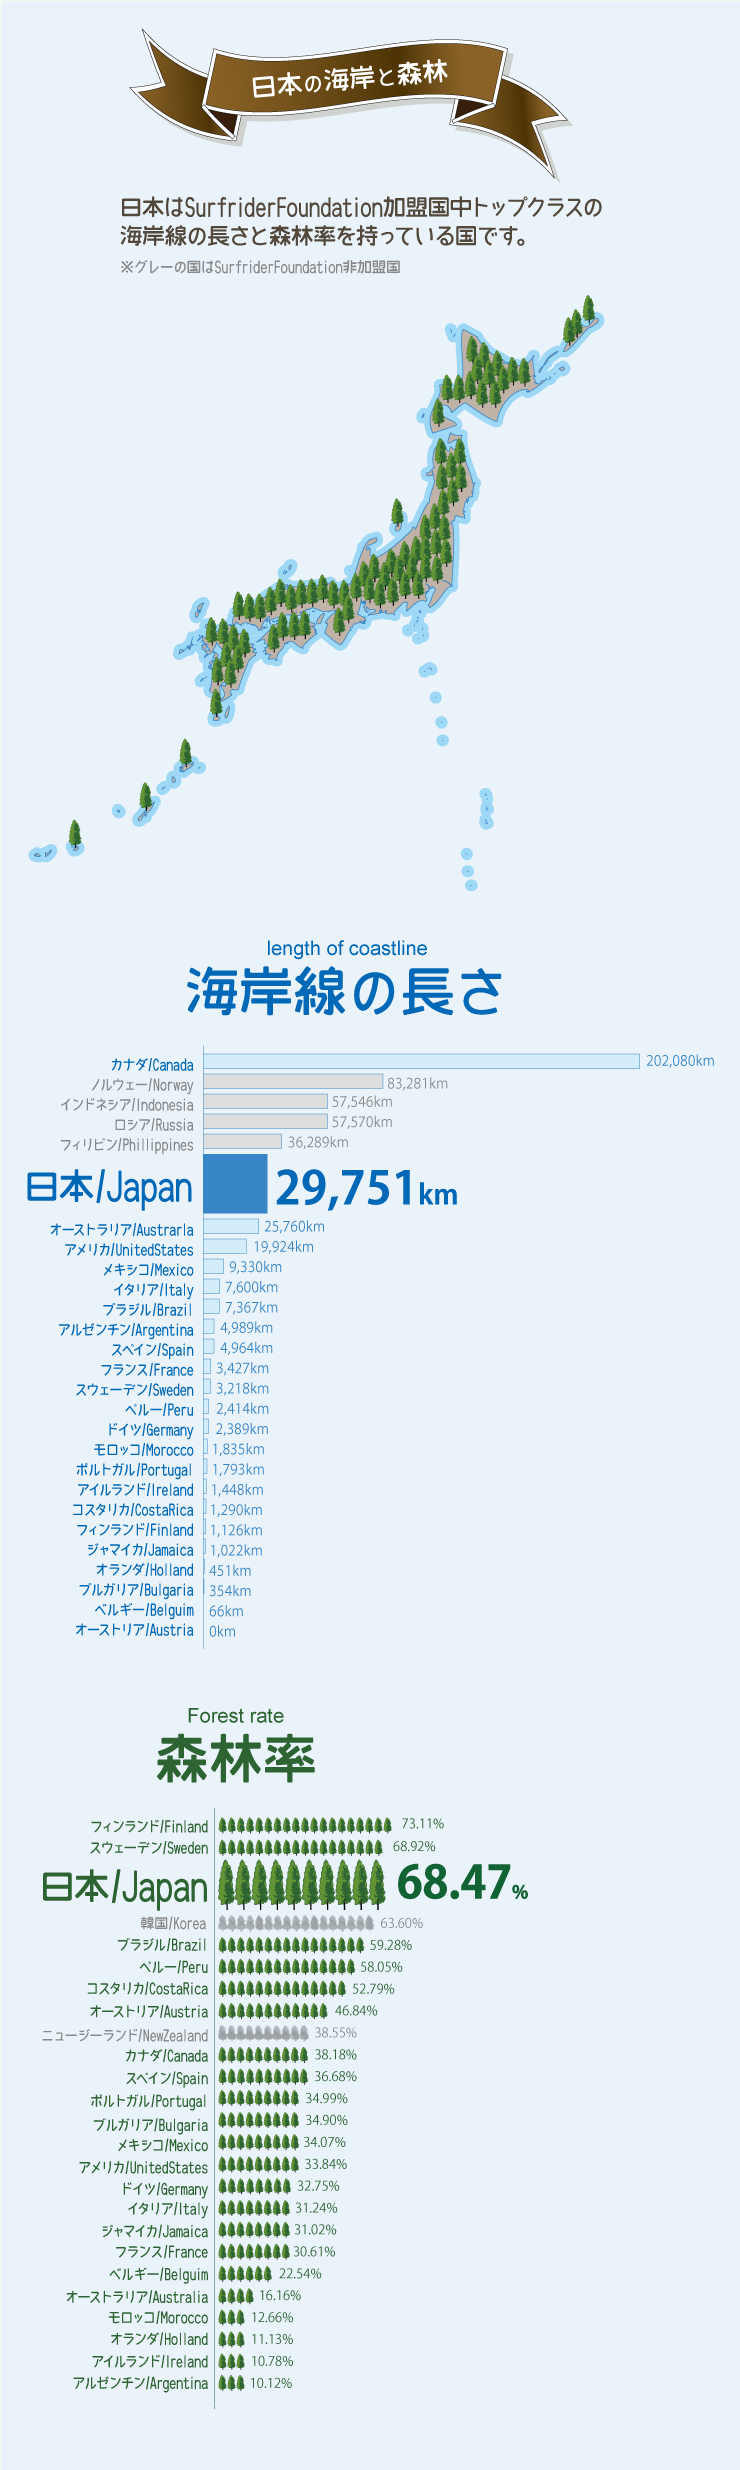 日本はSurfriderFoundation加盟国中トップクラスの海岸線の長さと森林率を持っている国です